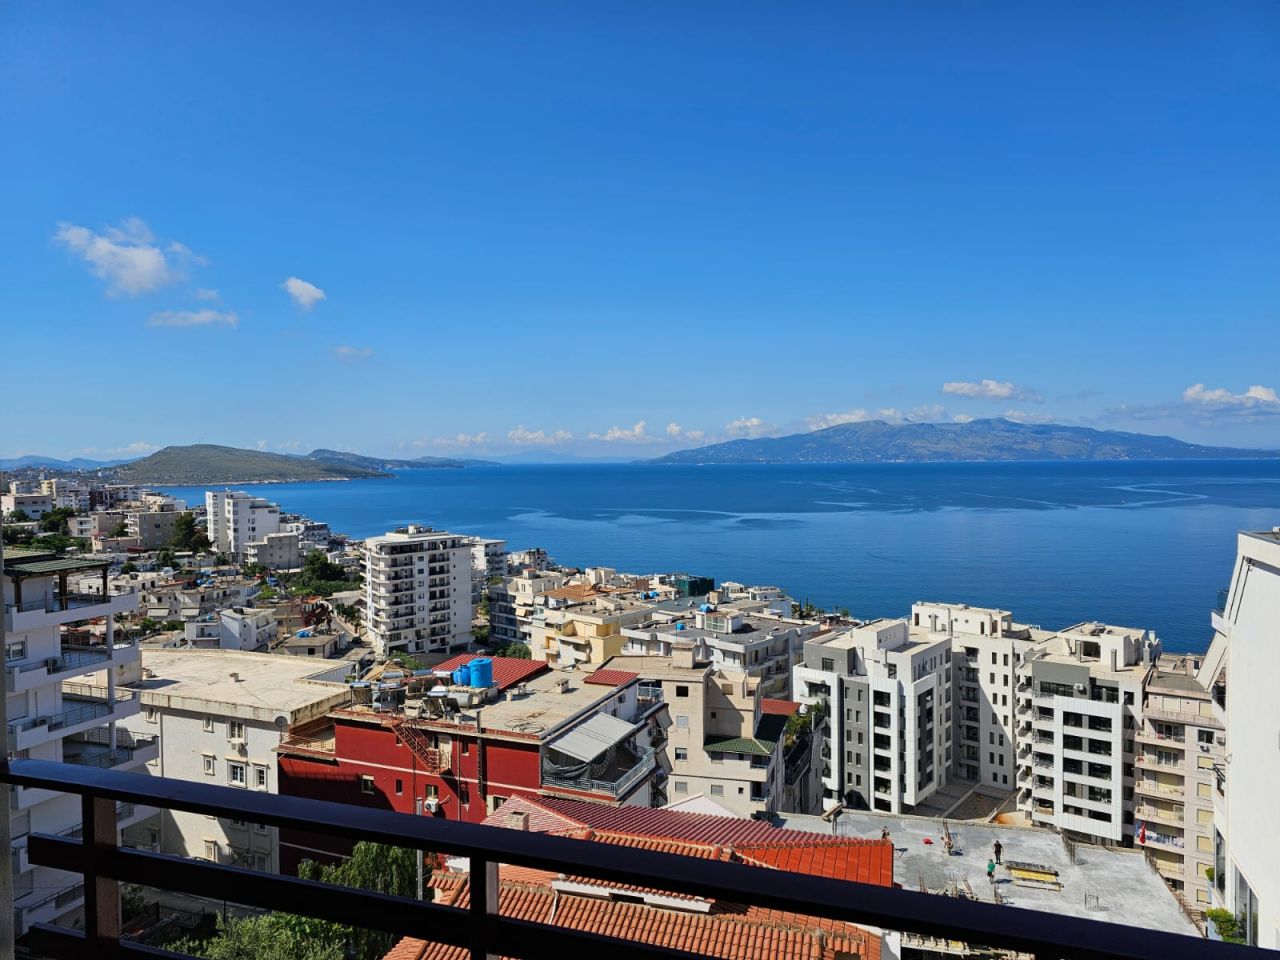 Apartamenty wakacyjne do wynajęcia w Sarandzie w Albanii